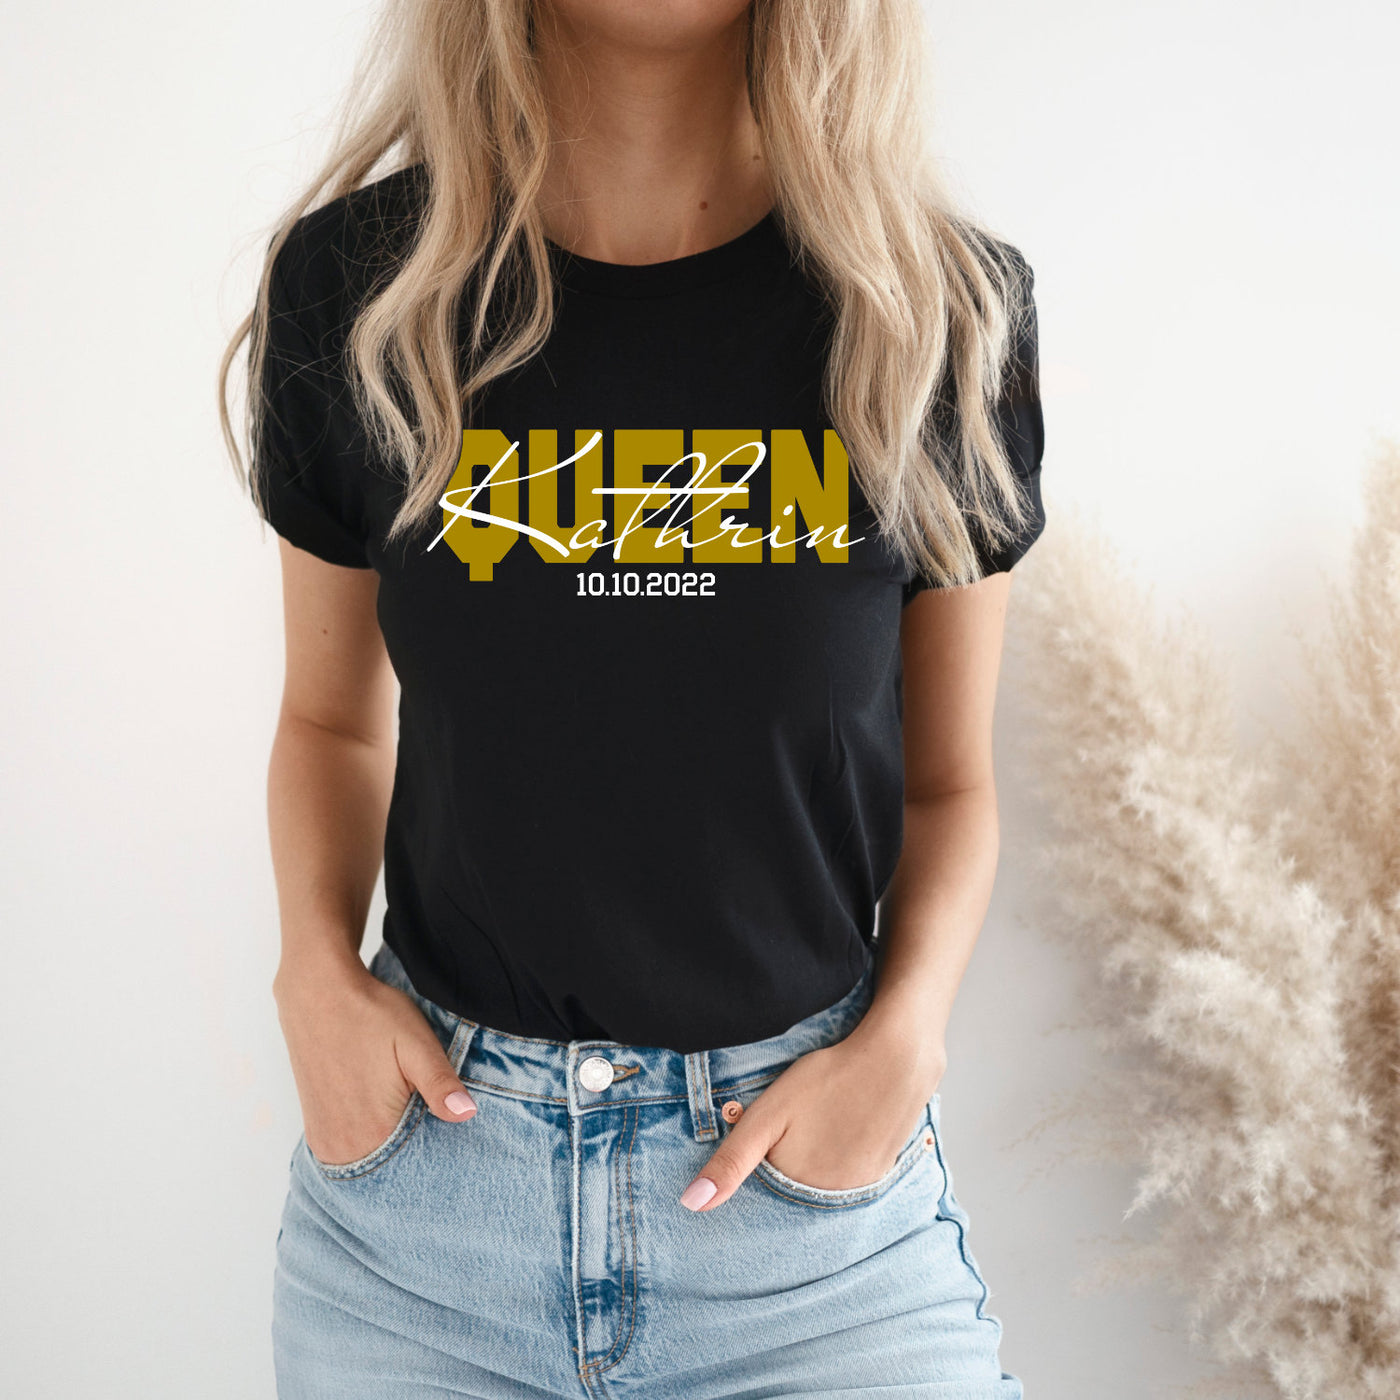 King Queen Shirts mit Namen und Wunschdatum Pärchen T-Shirts für Paare Valentinstag Geschenk Pärchen Shirts King & Queen